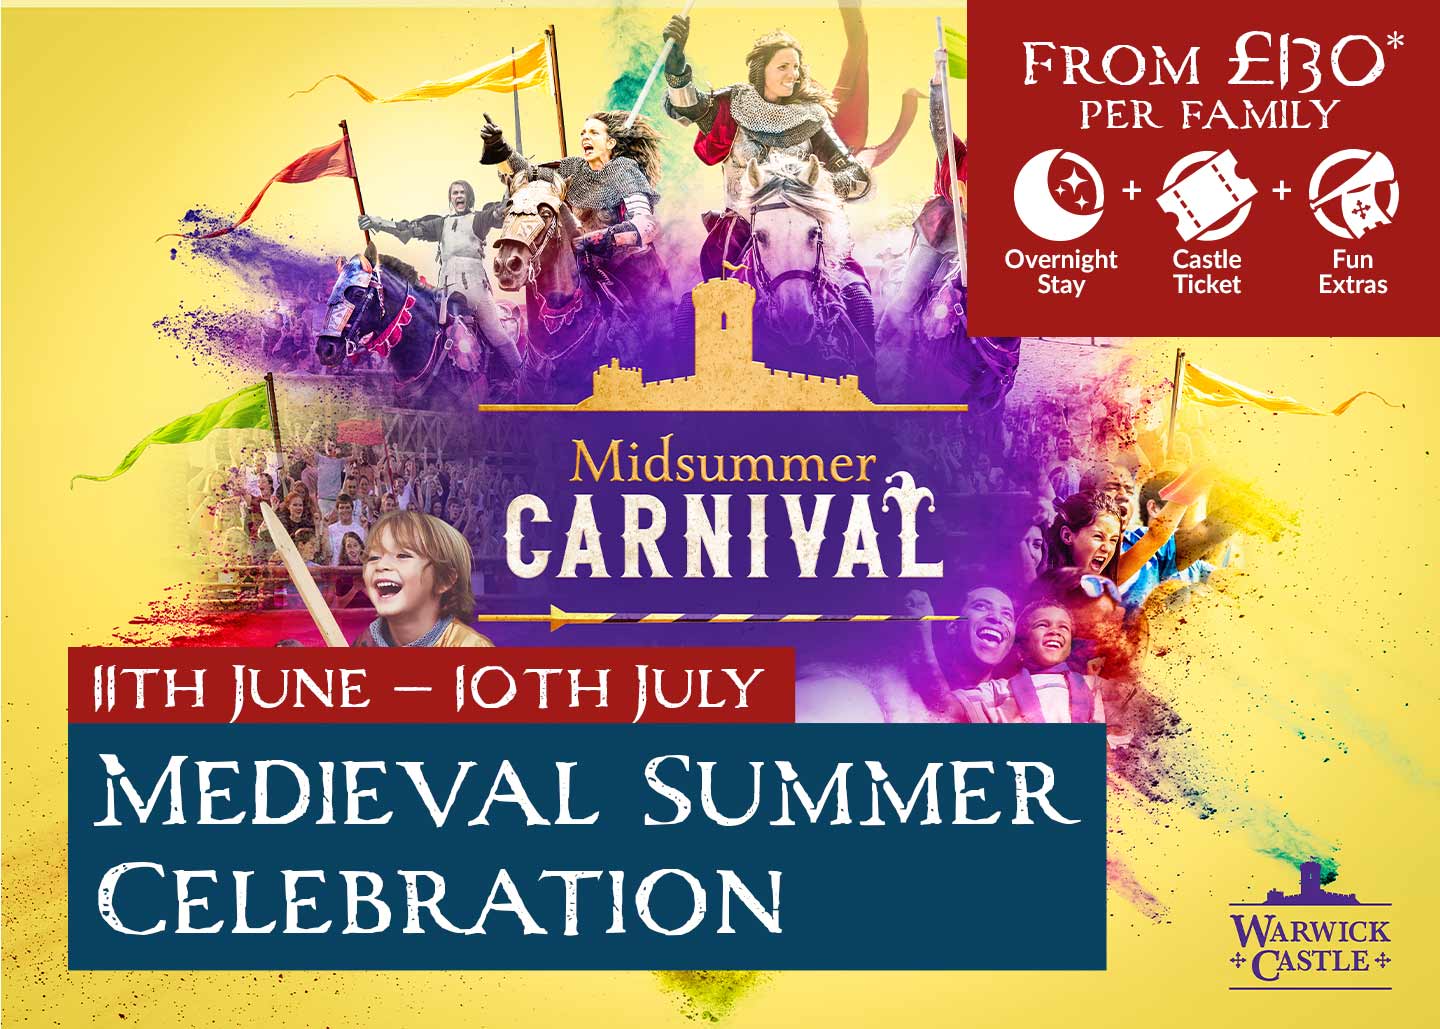 Midsummer Carnival at Warwick Castle